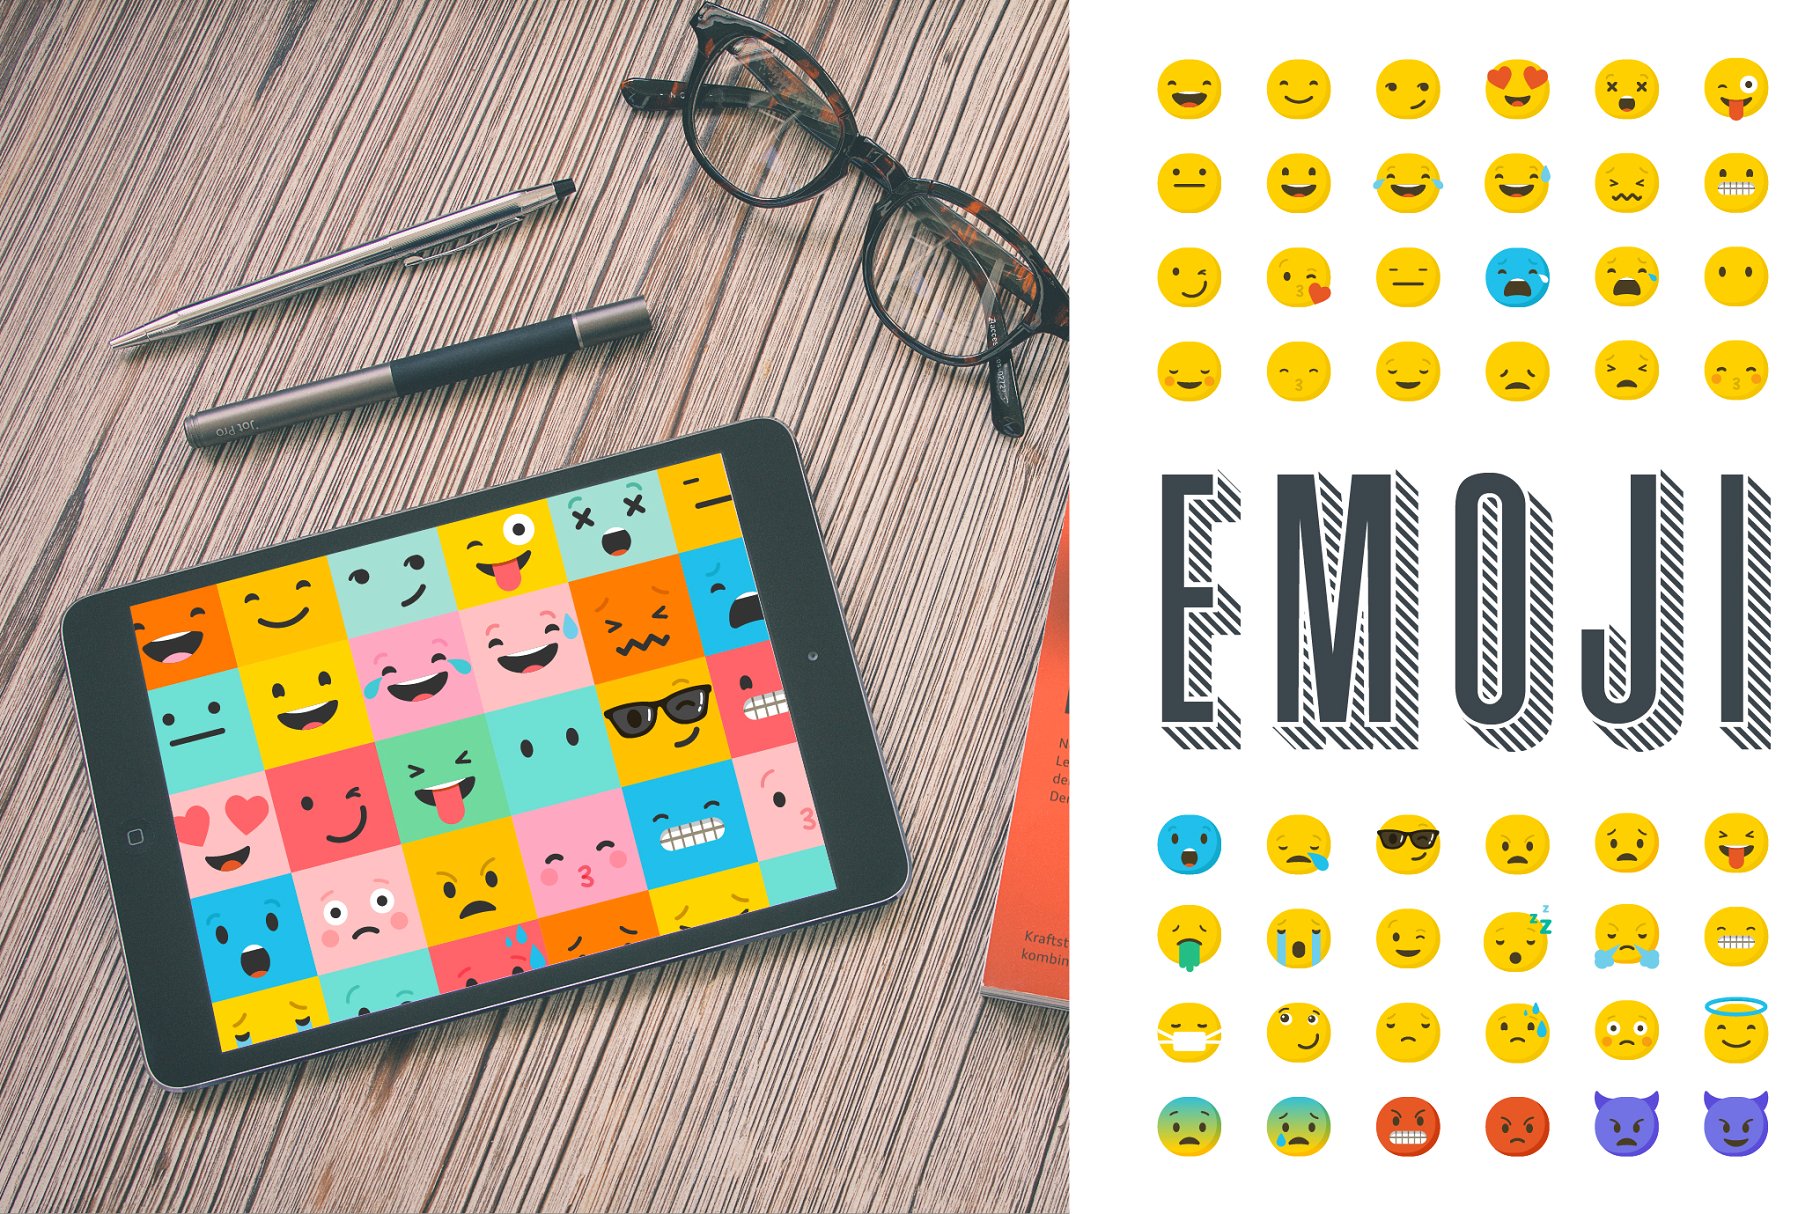 表情符号矢量图标素材 Emoji emoticons bun